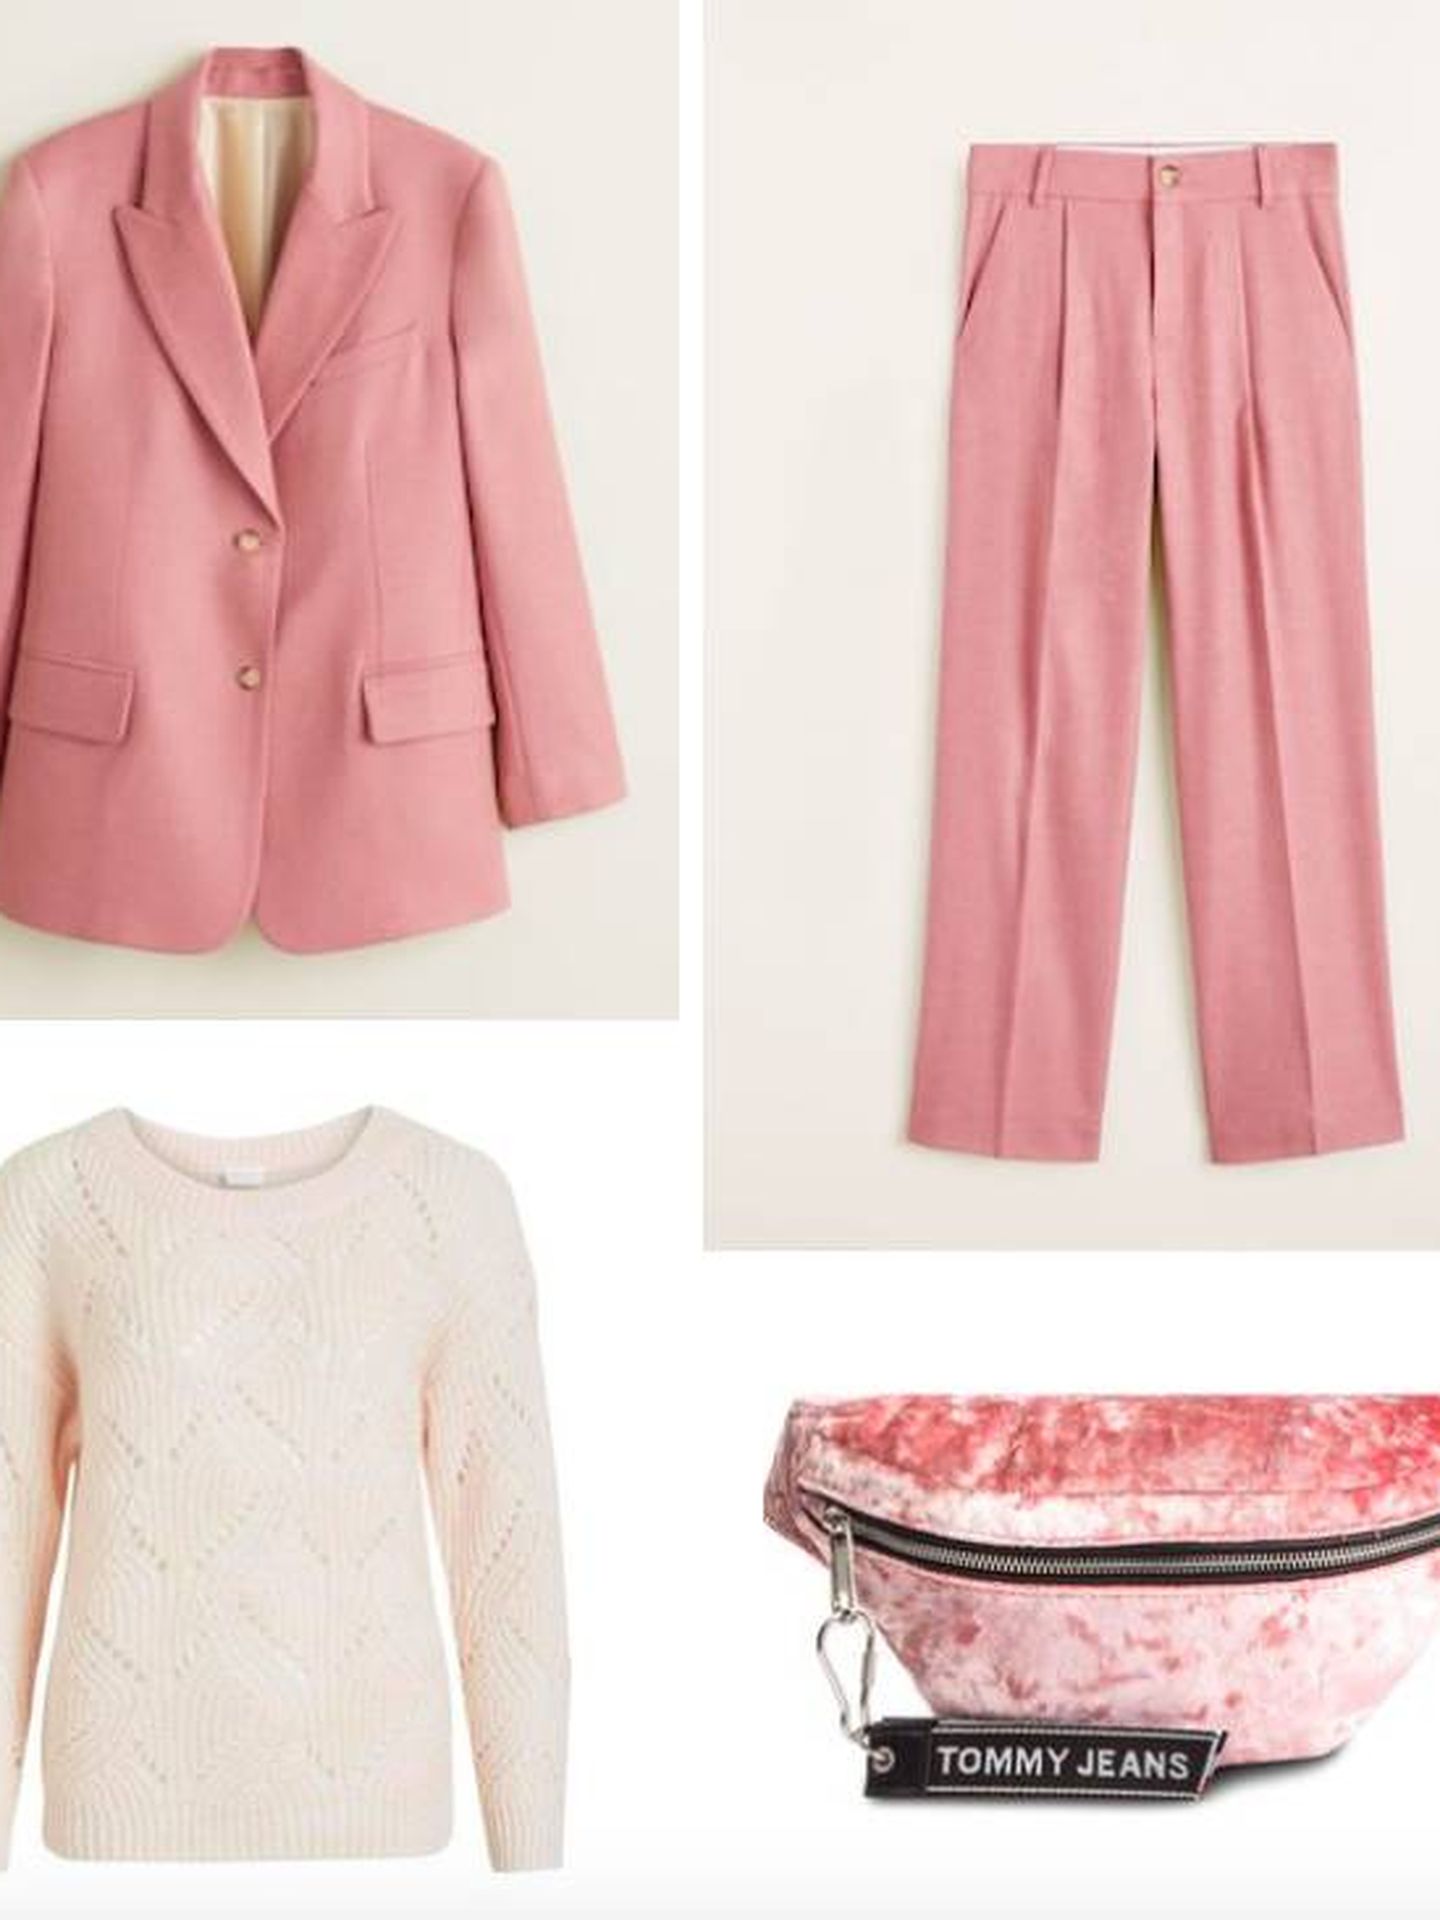 La clave de este outfit está en jugar con los tonos rosas muy claros.